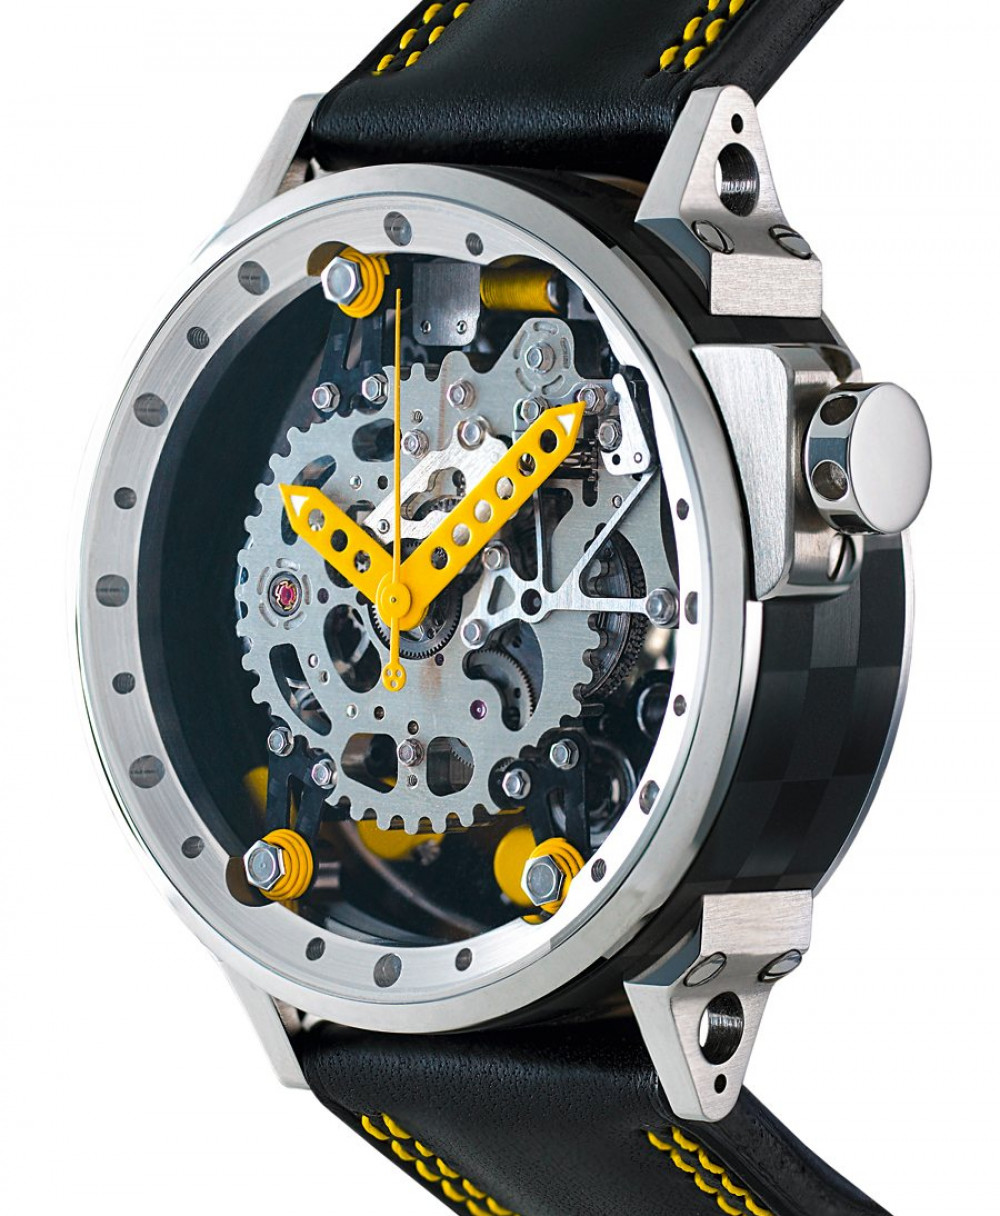 Zegarek firmy B.R.M, model TriRotor